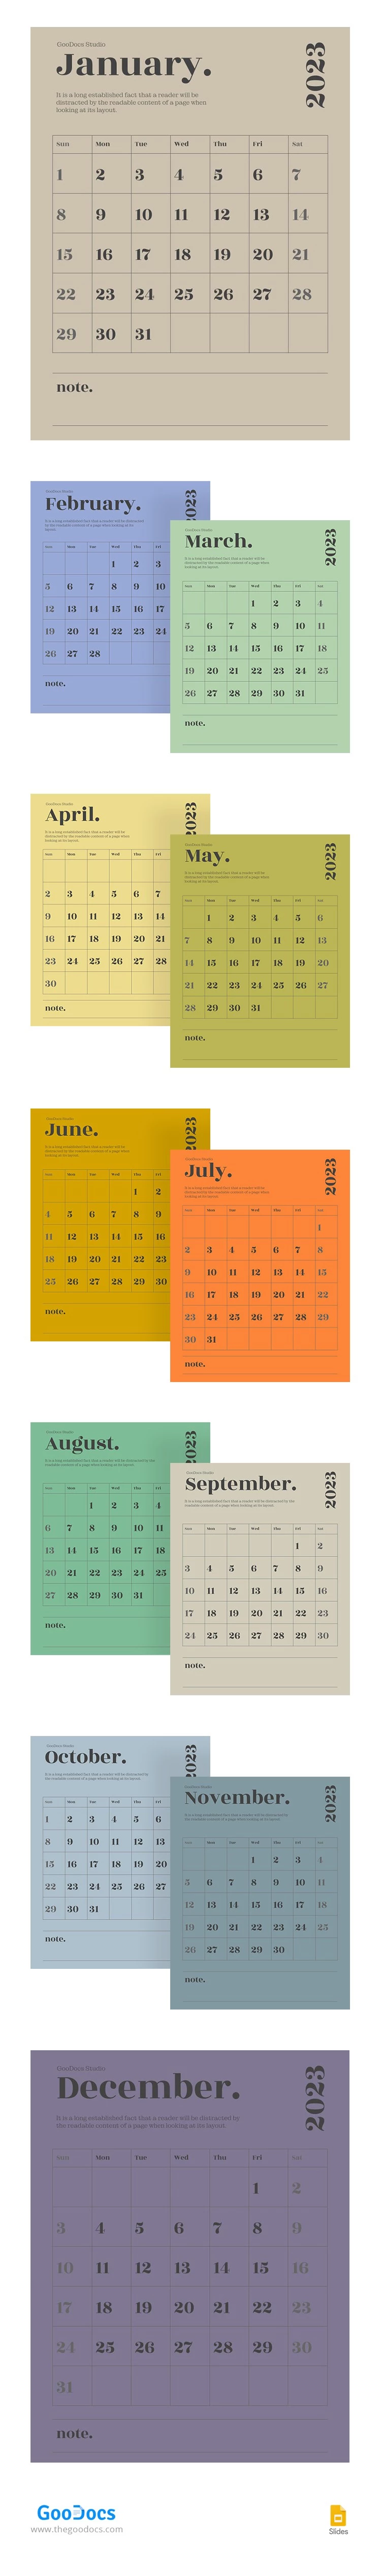 Modern School Calendar - free Google Docs Template - 10064654